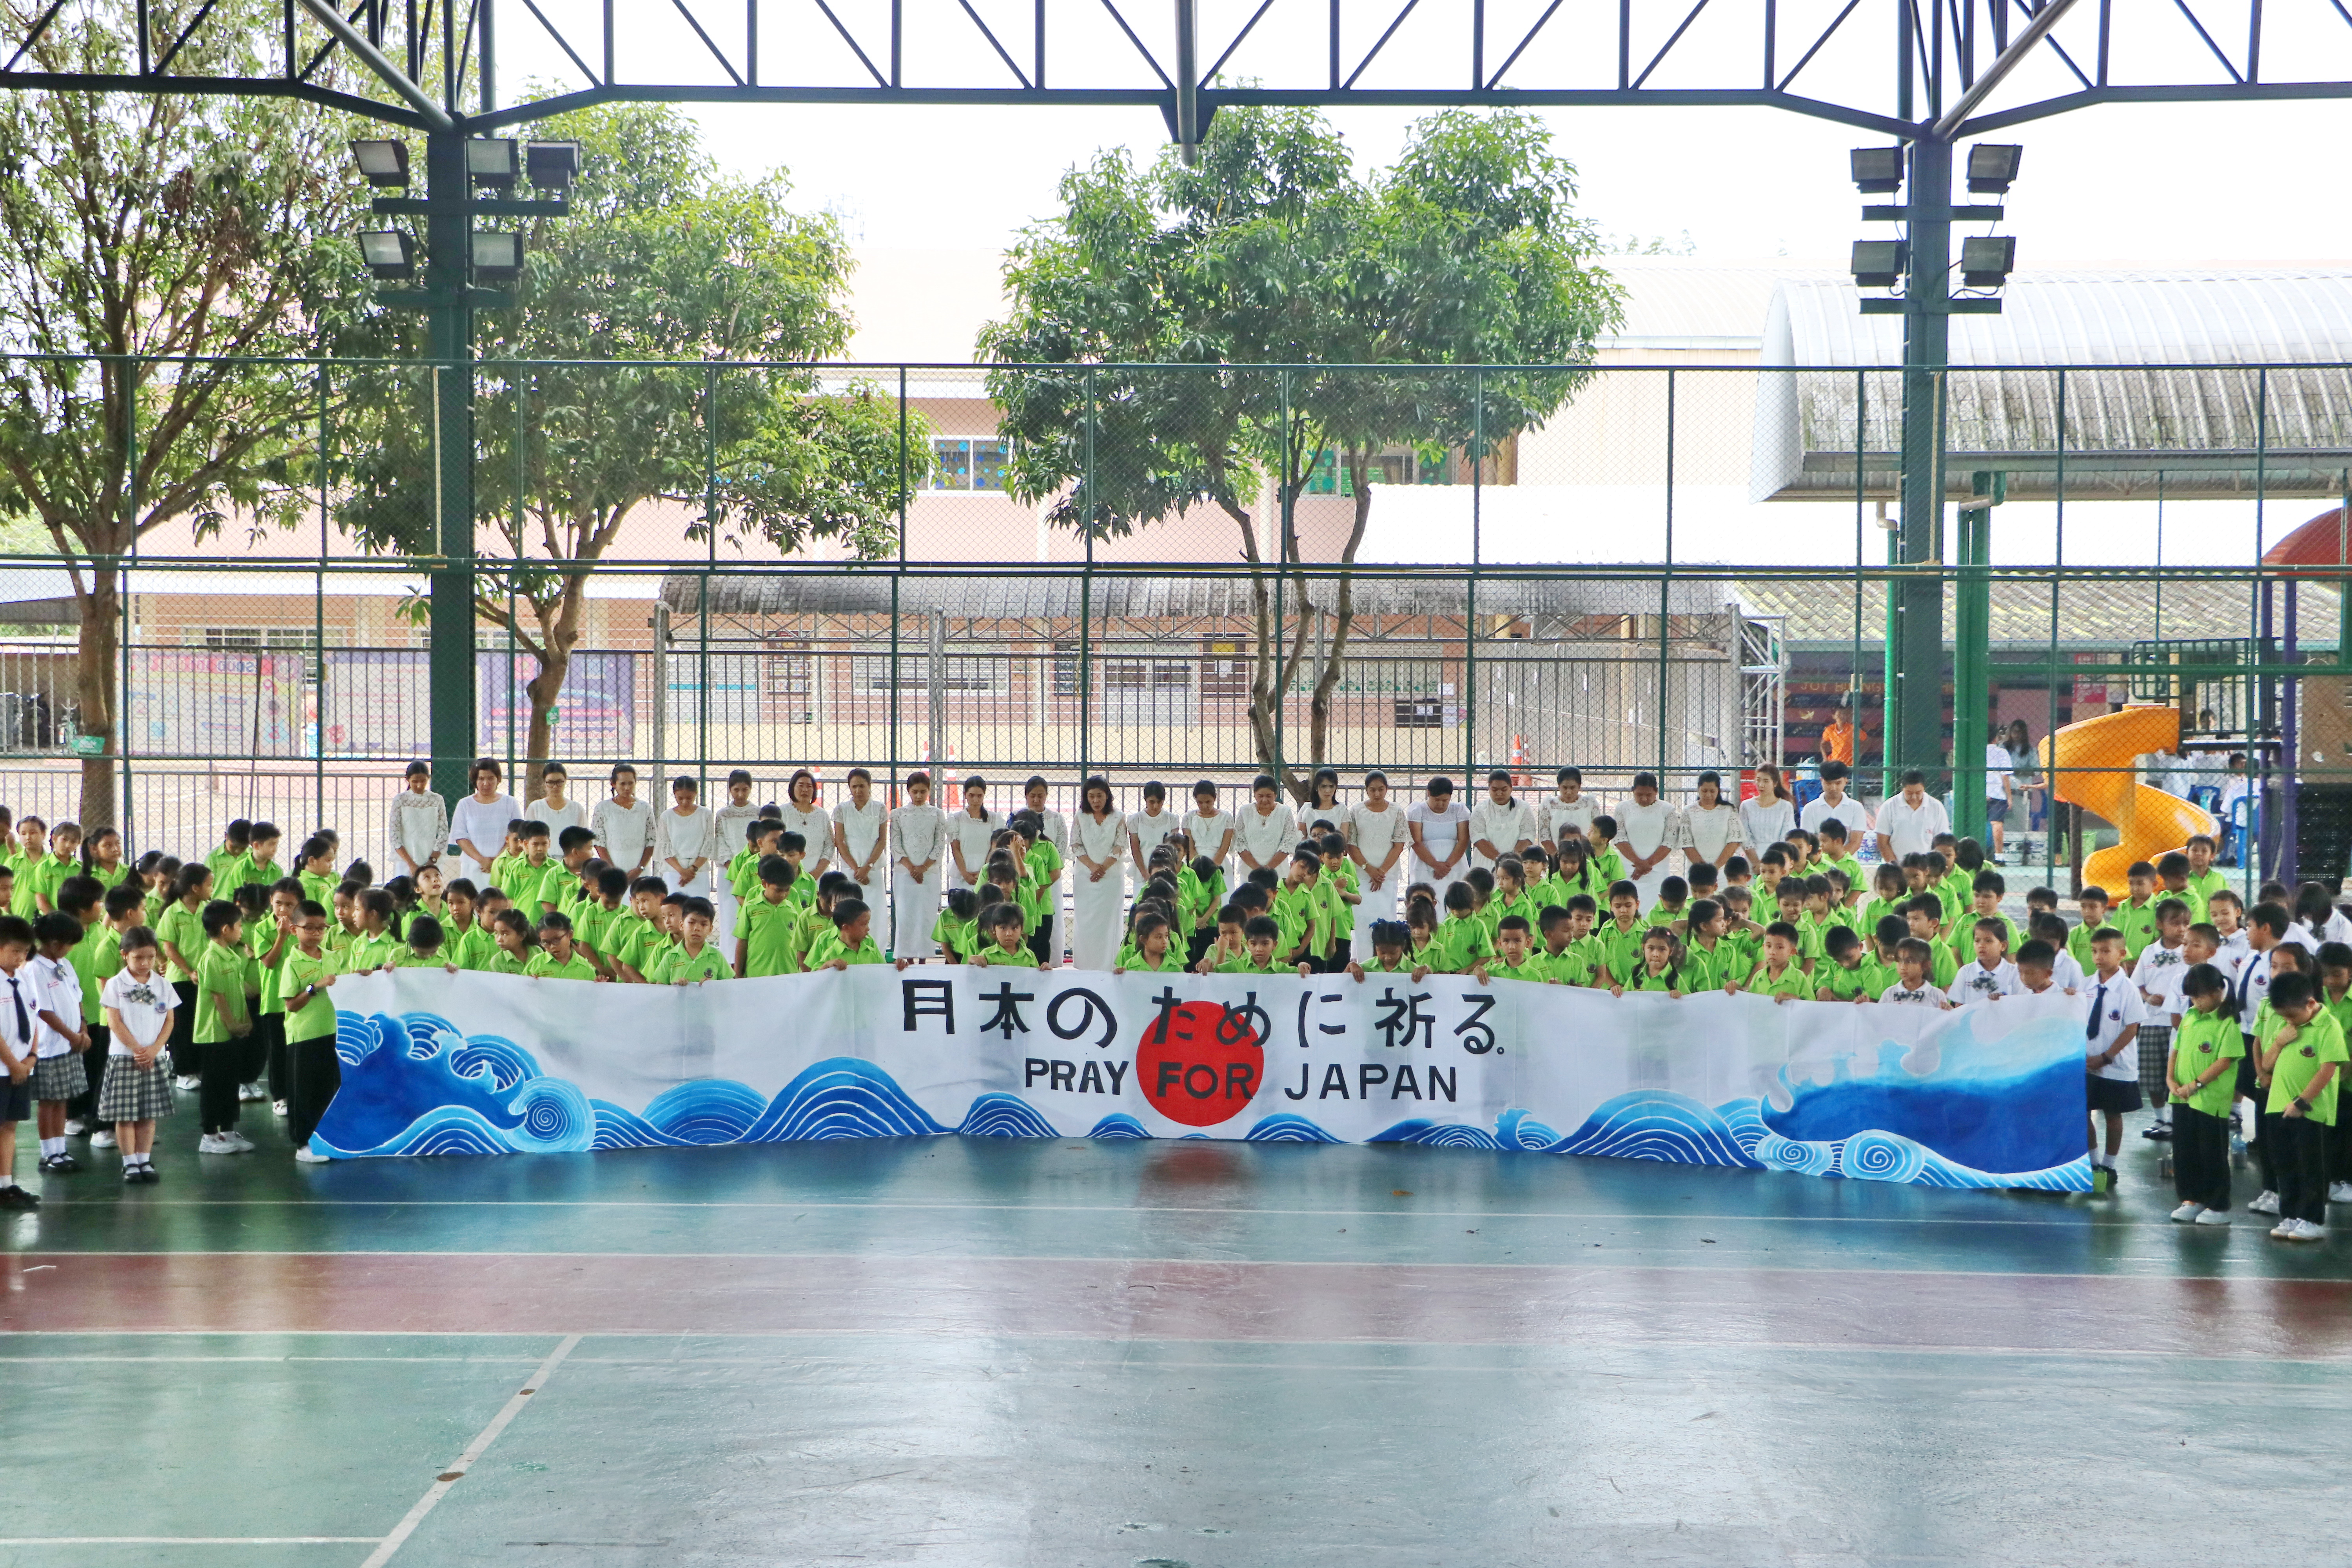 คณะครู บุคลากร และนักเรียนโรงเรียนจอย <br>ส่งใจให้ญี่ปุ่นน้ำท่วม